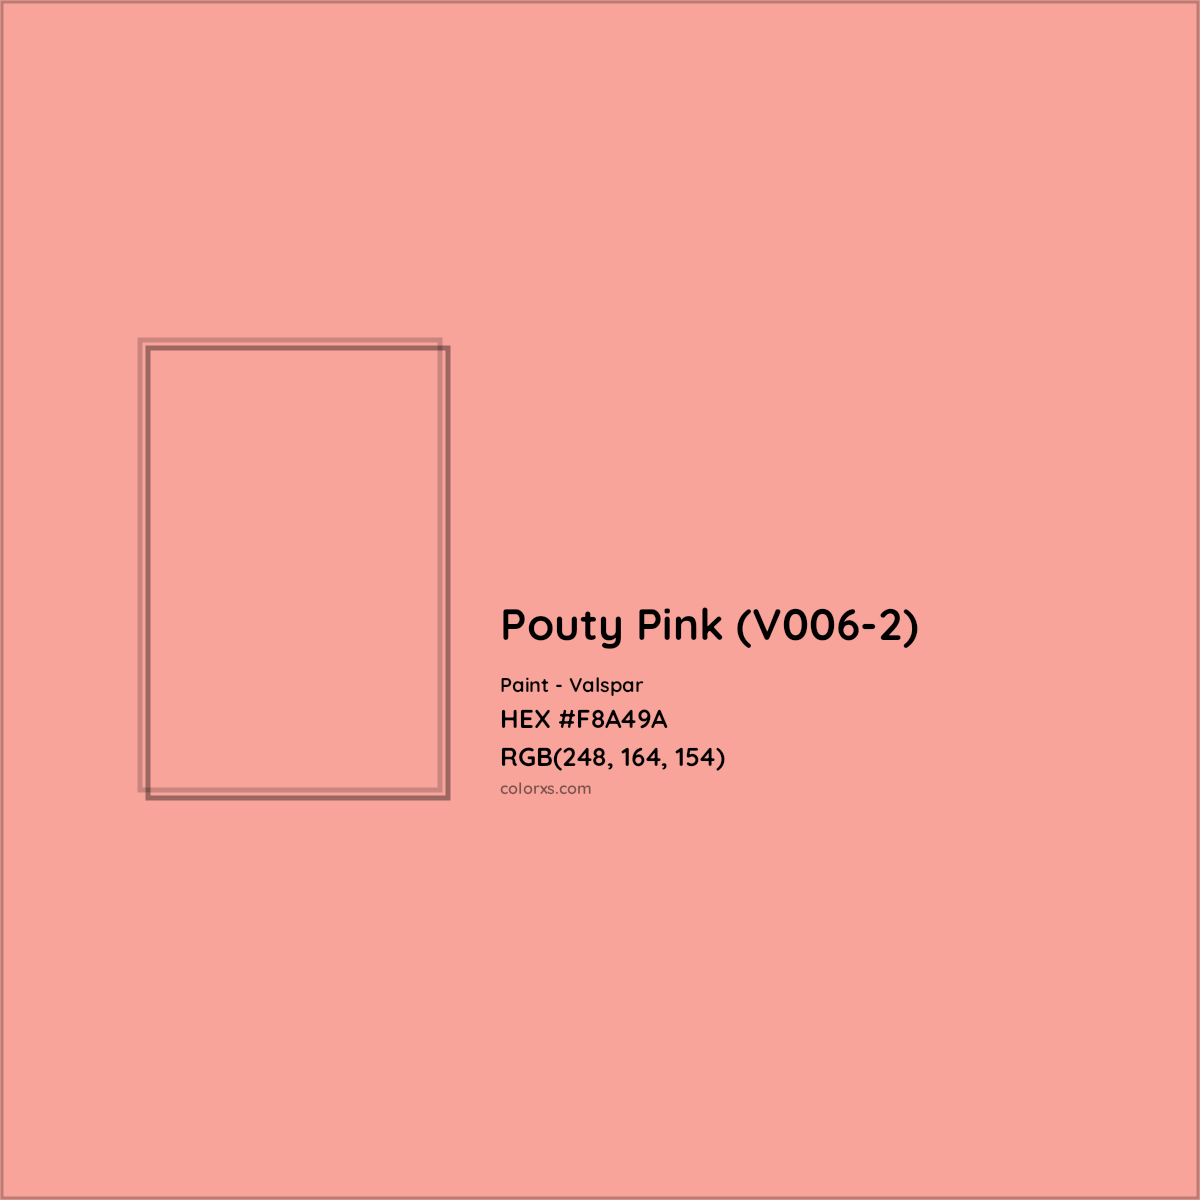 HEX #F8A49A Pouty Pink (V006-2) Paint Valspar - Color Code